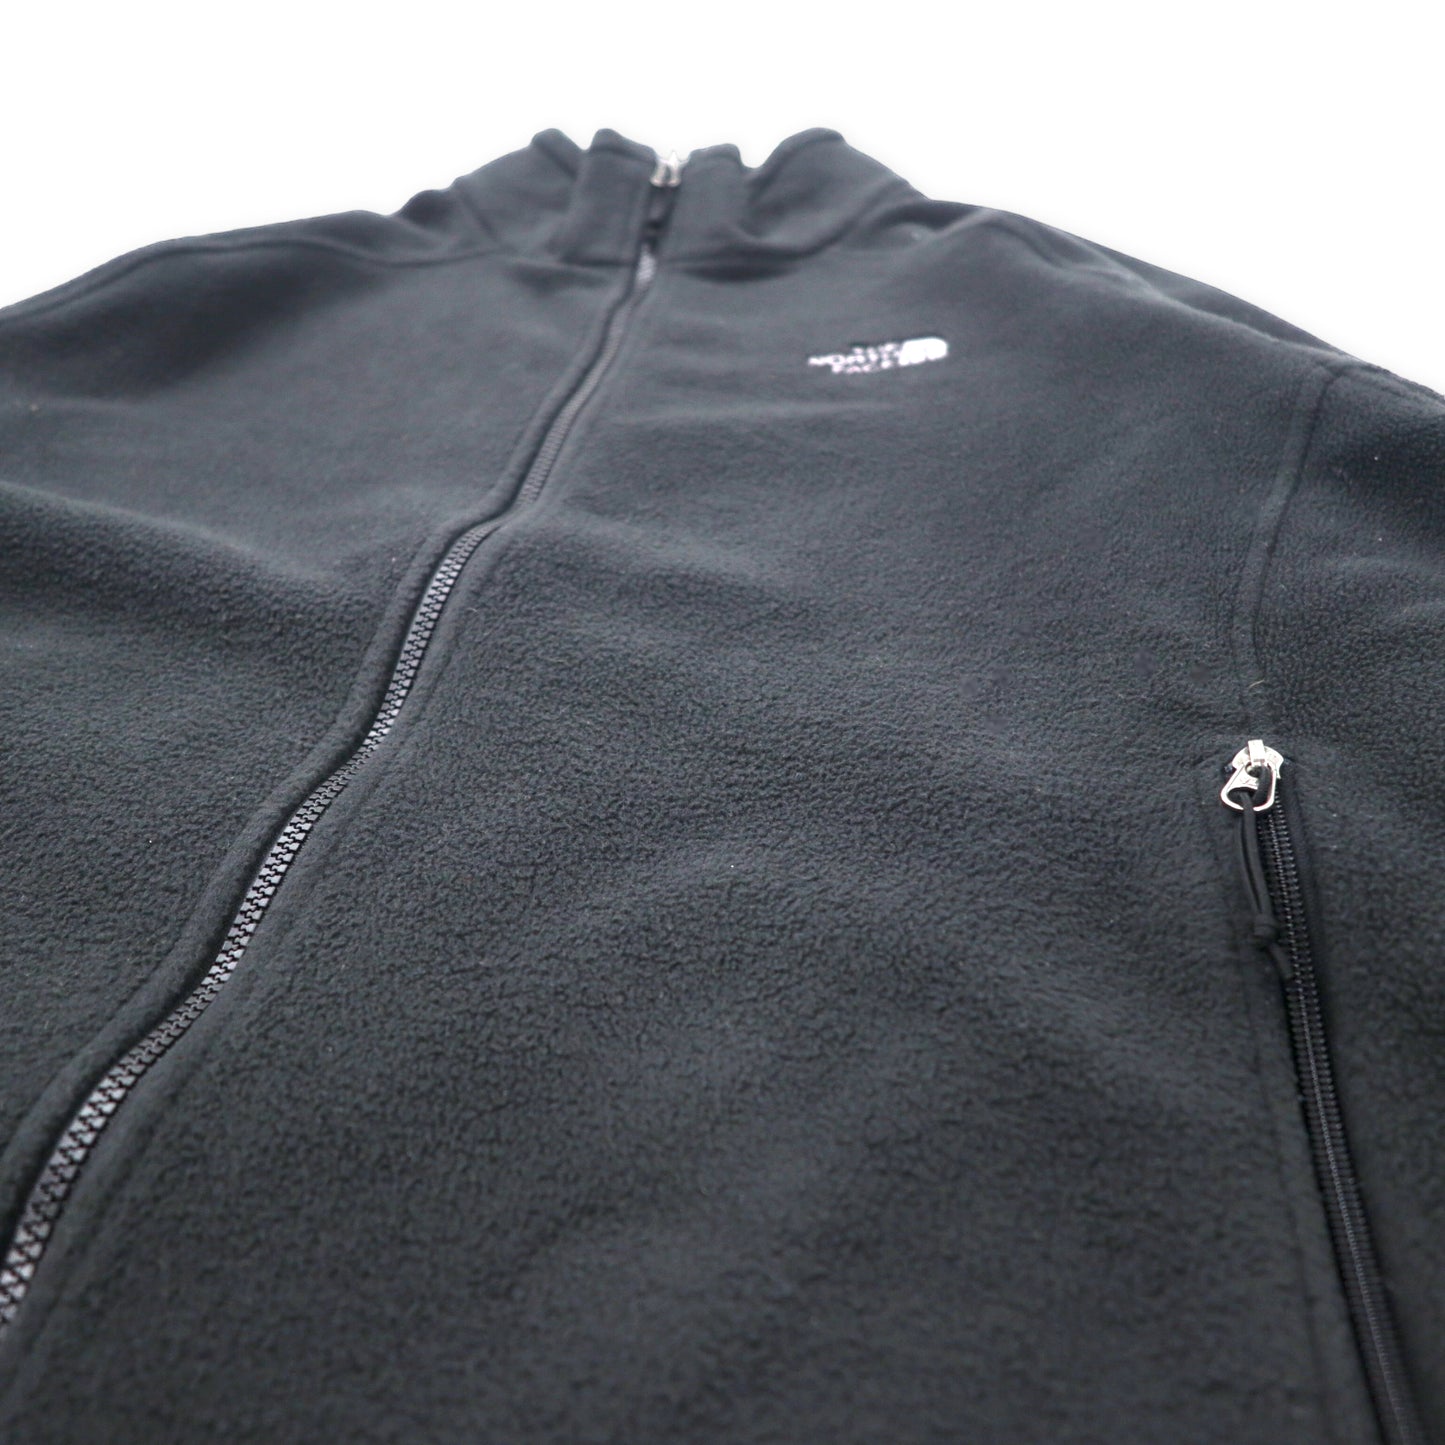 THE NORTH FACE フルジップ フリースジャケット XL ブラック ポリエステル ワンポイントロゴ刺繍 ビッグサイズ エルサルバドル製